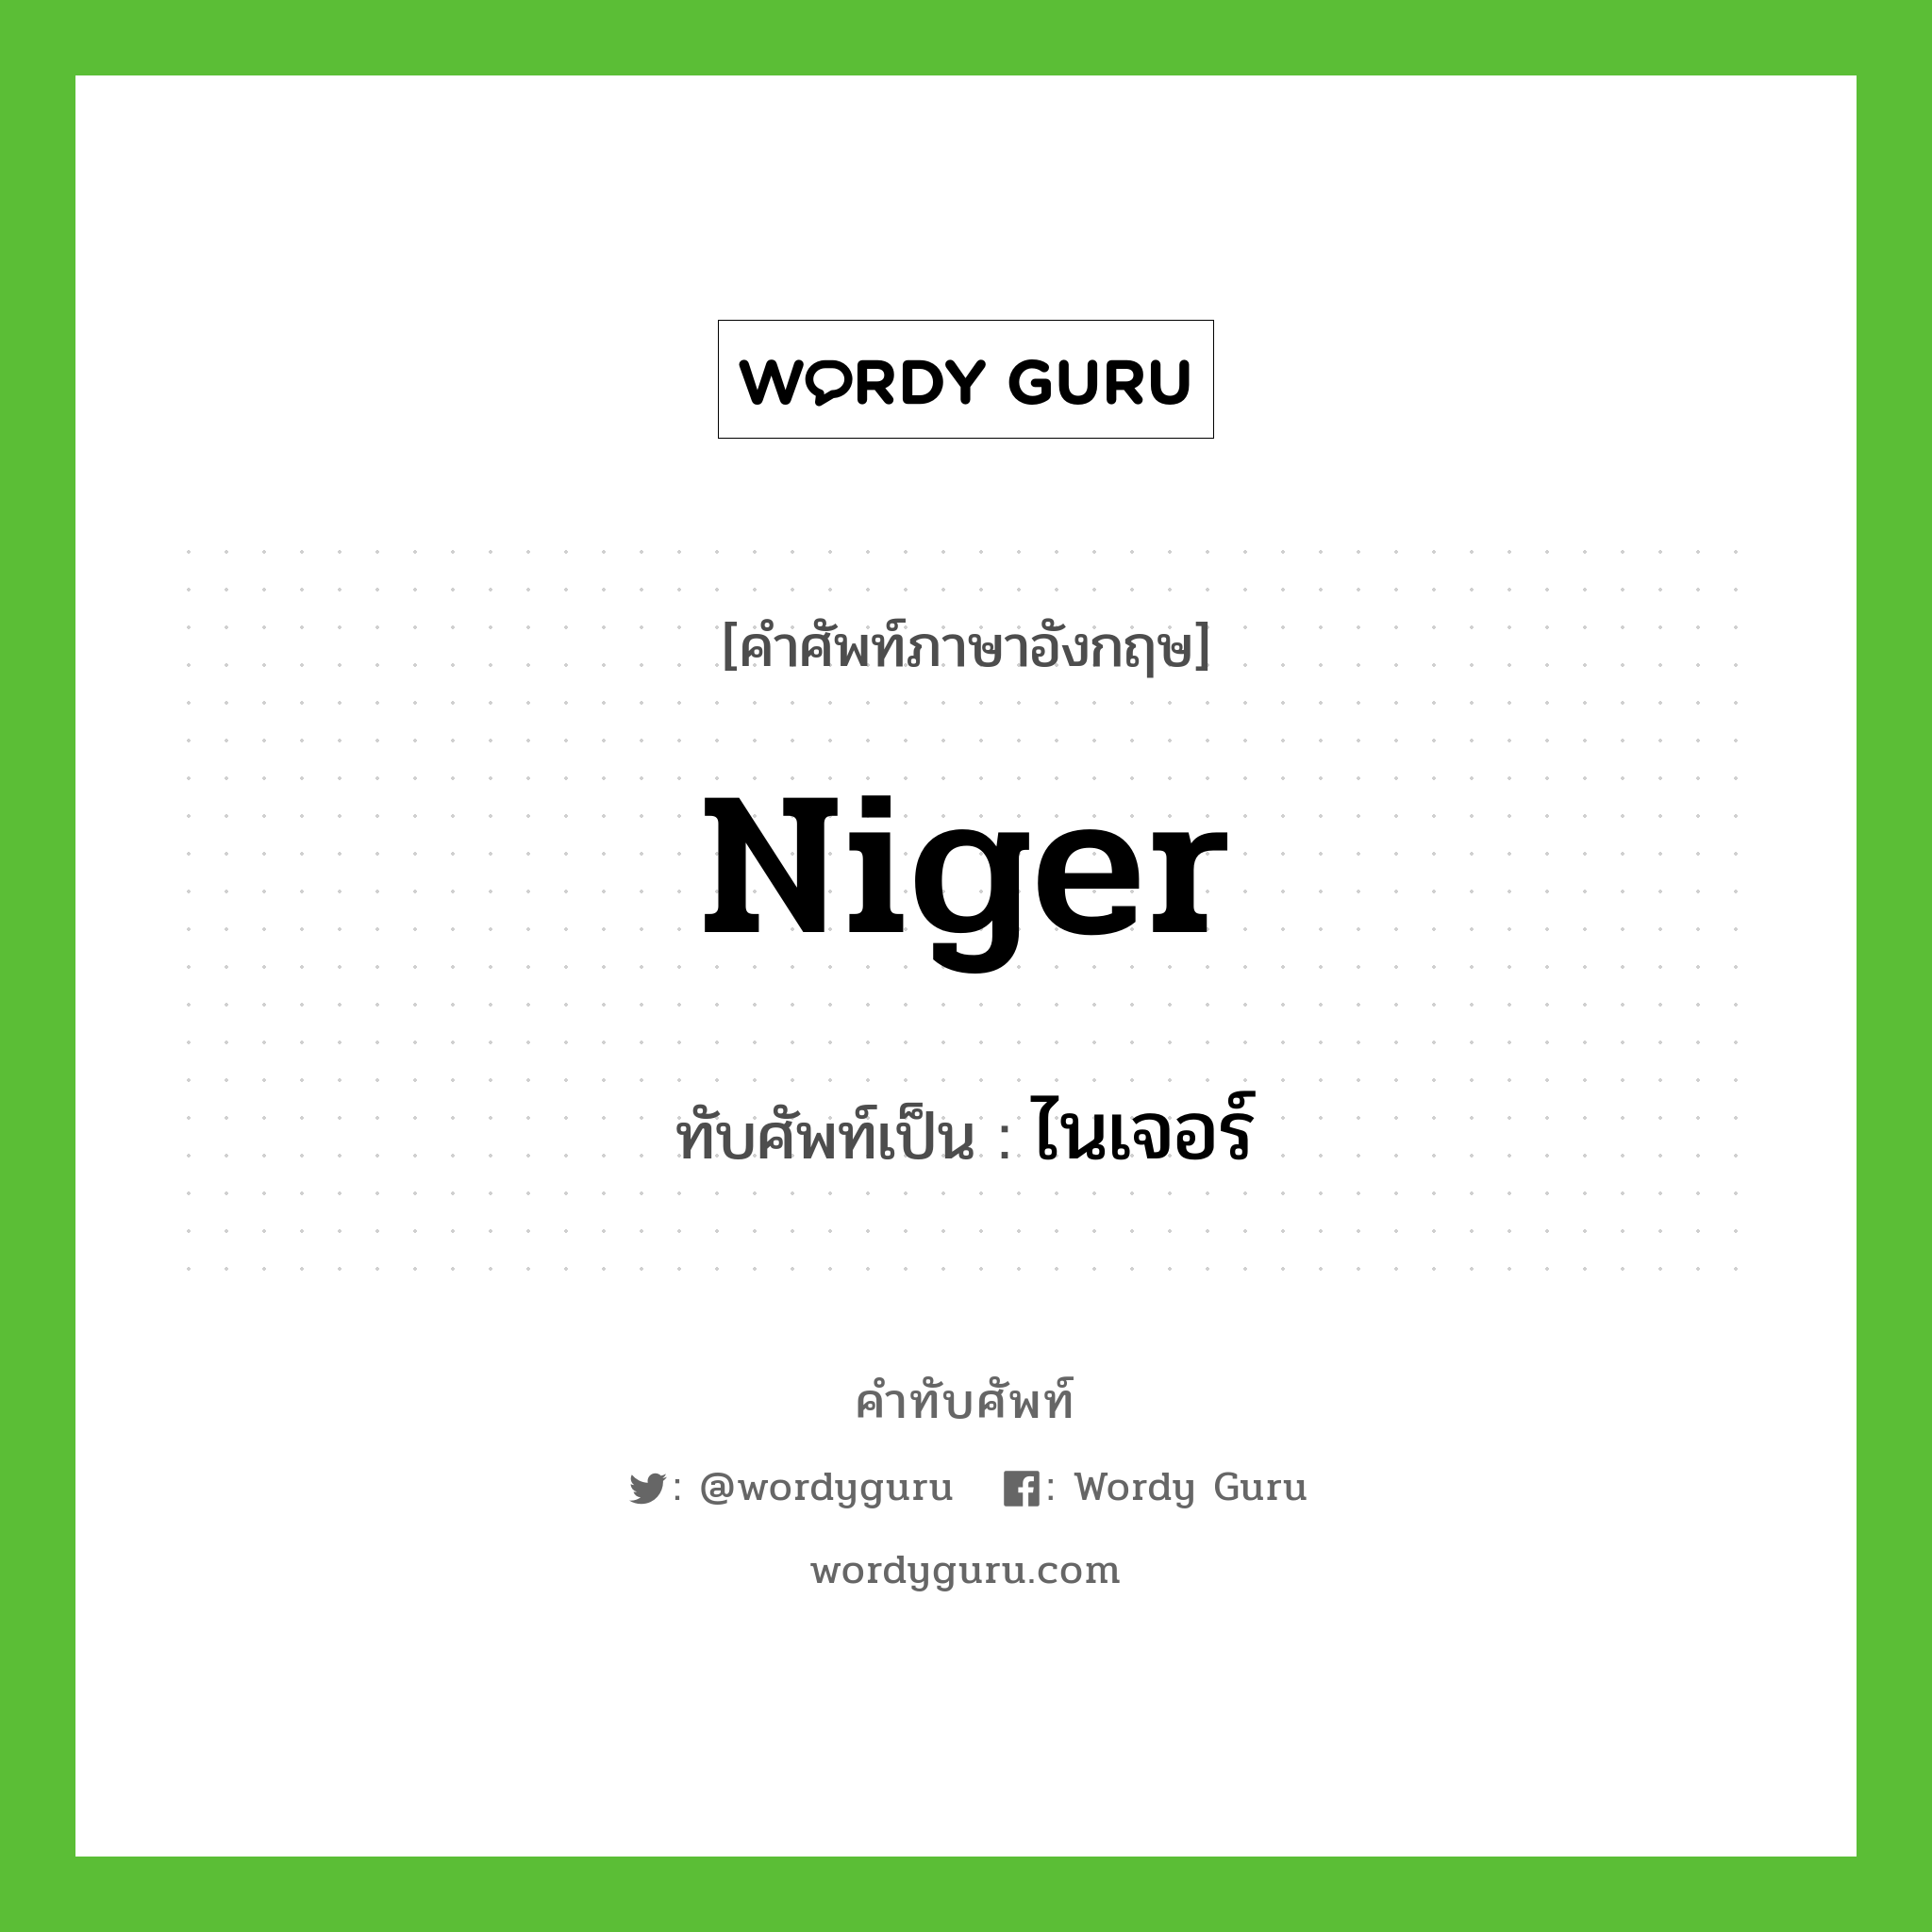 Niger เขียนเป็นคำไทยว่าอะไร?, คำศัพท์ภาษาอังกฤษ Niger ทับศัพท์เป็น ไนเจอร์